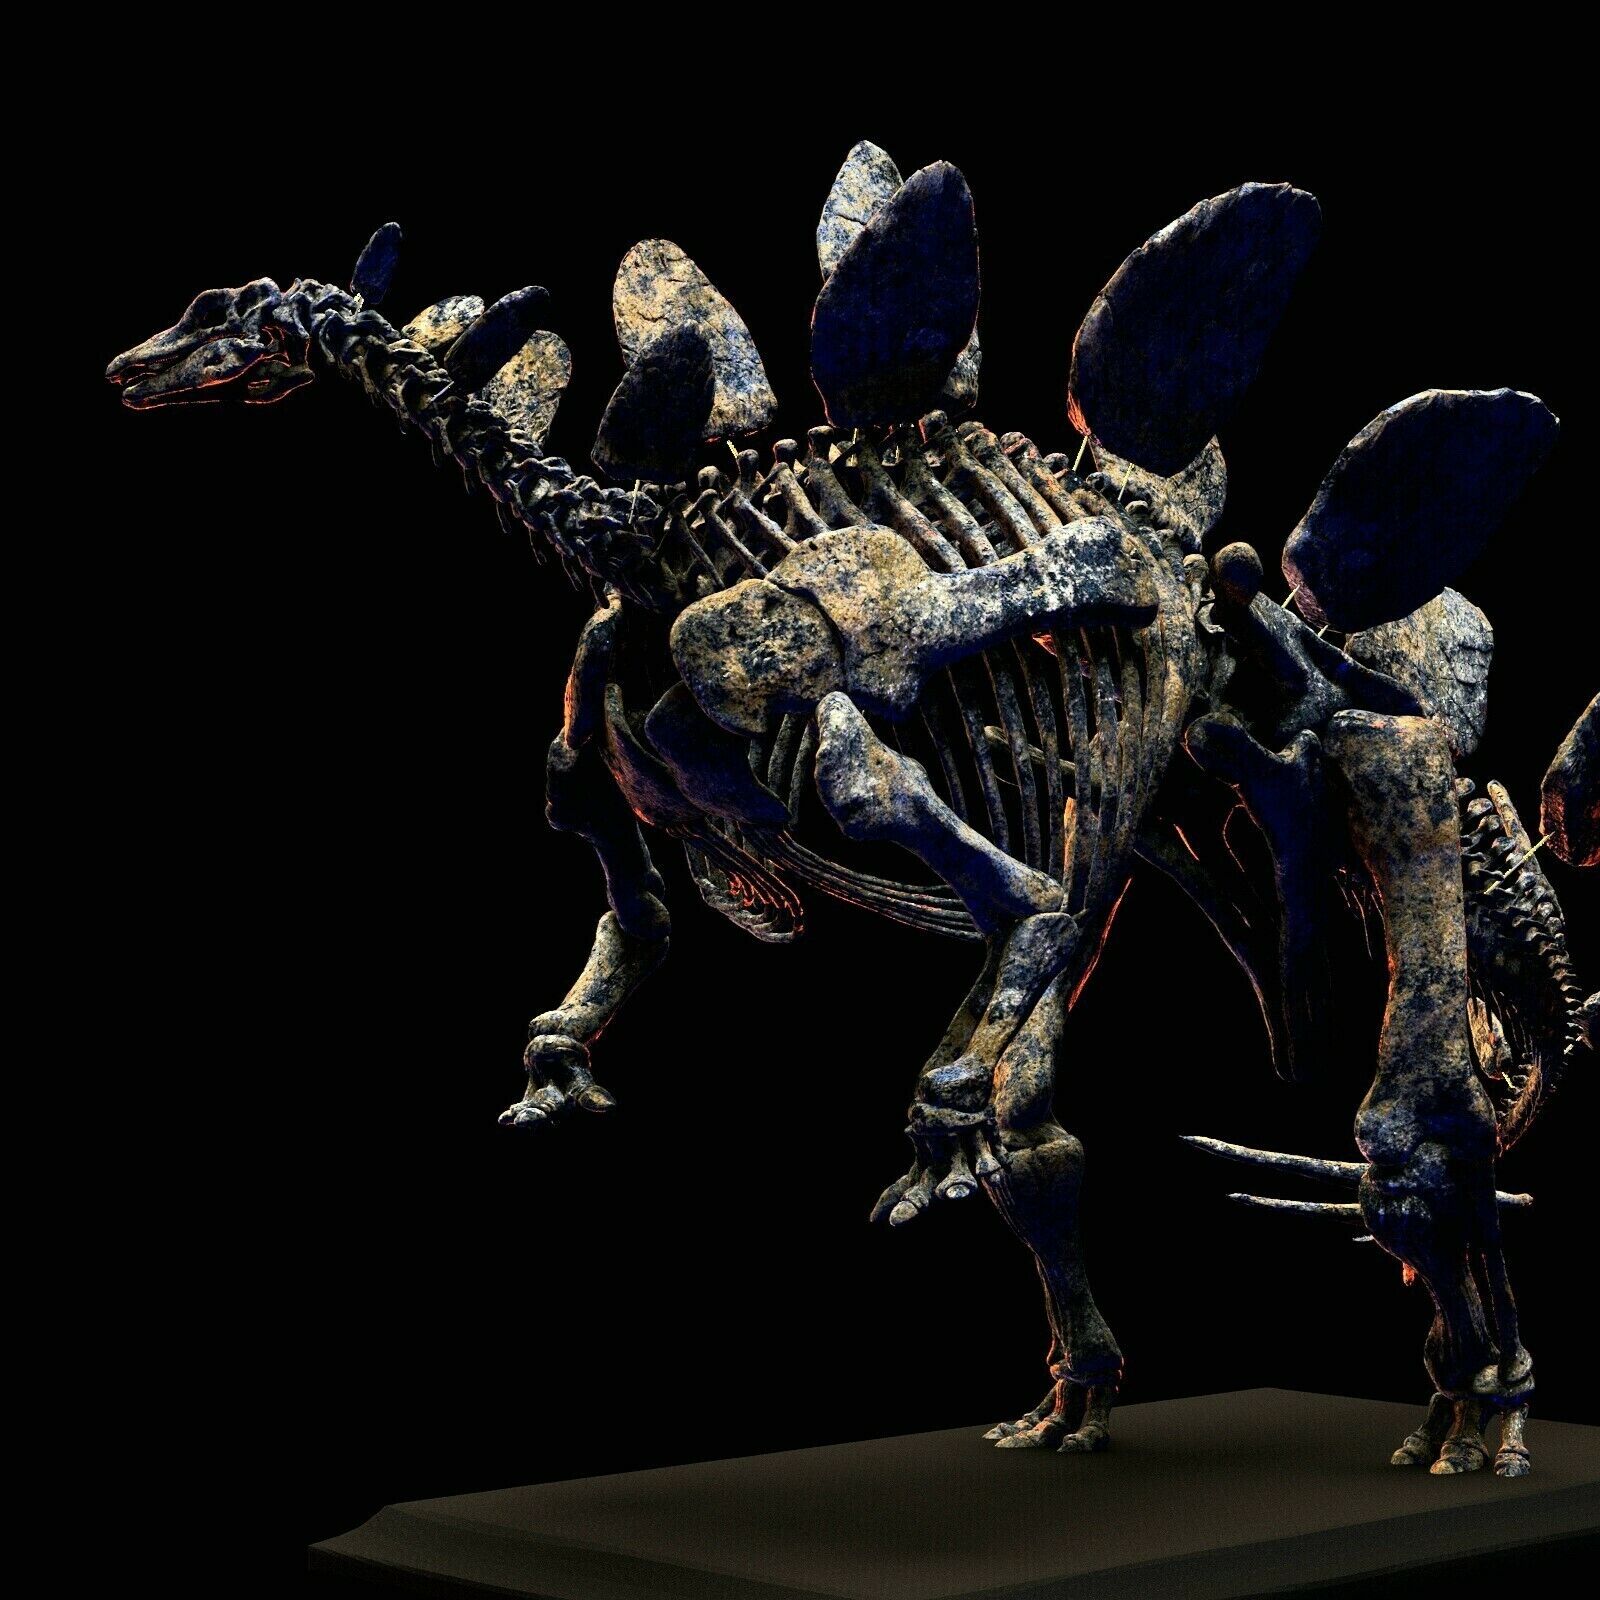 3d printed The skull of STEGOSAURUS skeleton model dinosaur 1:20